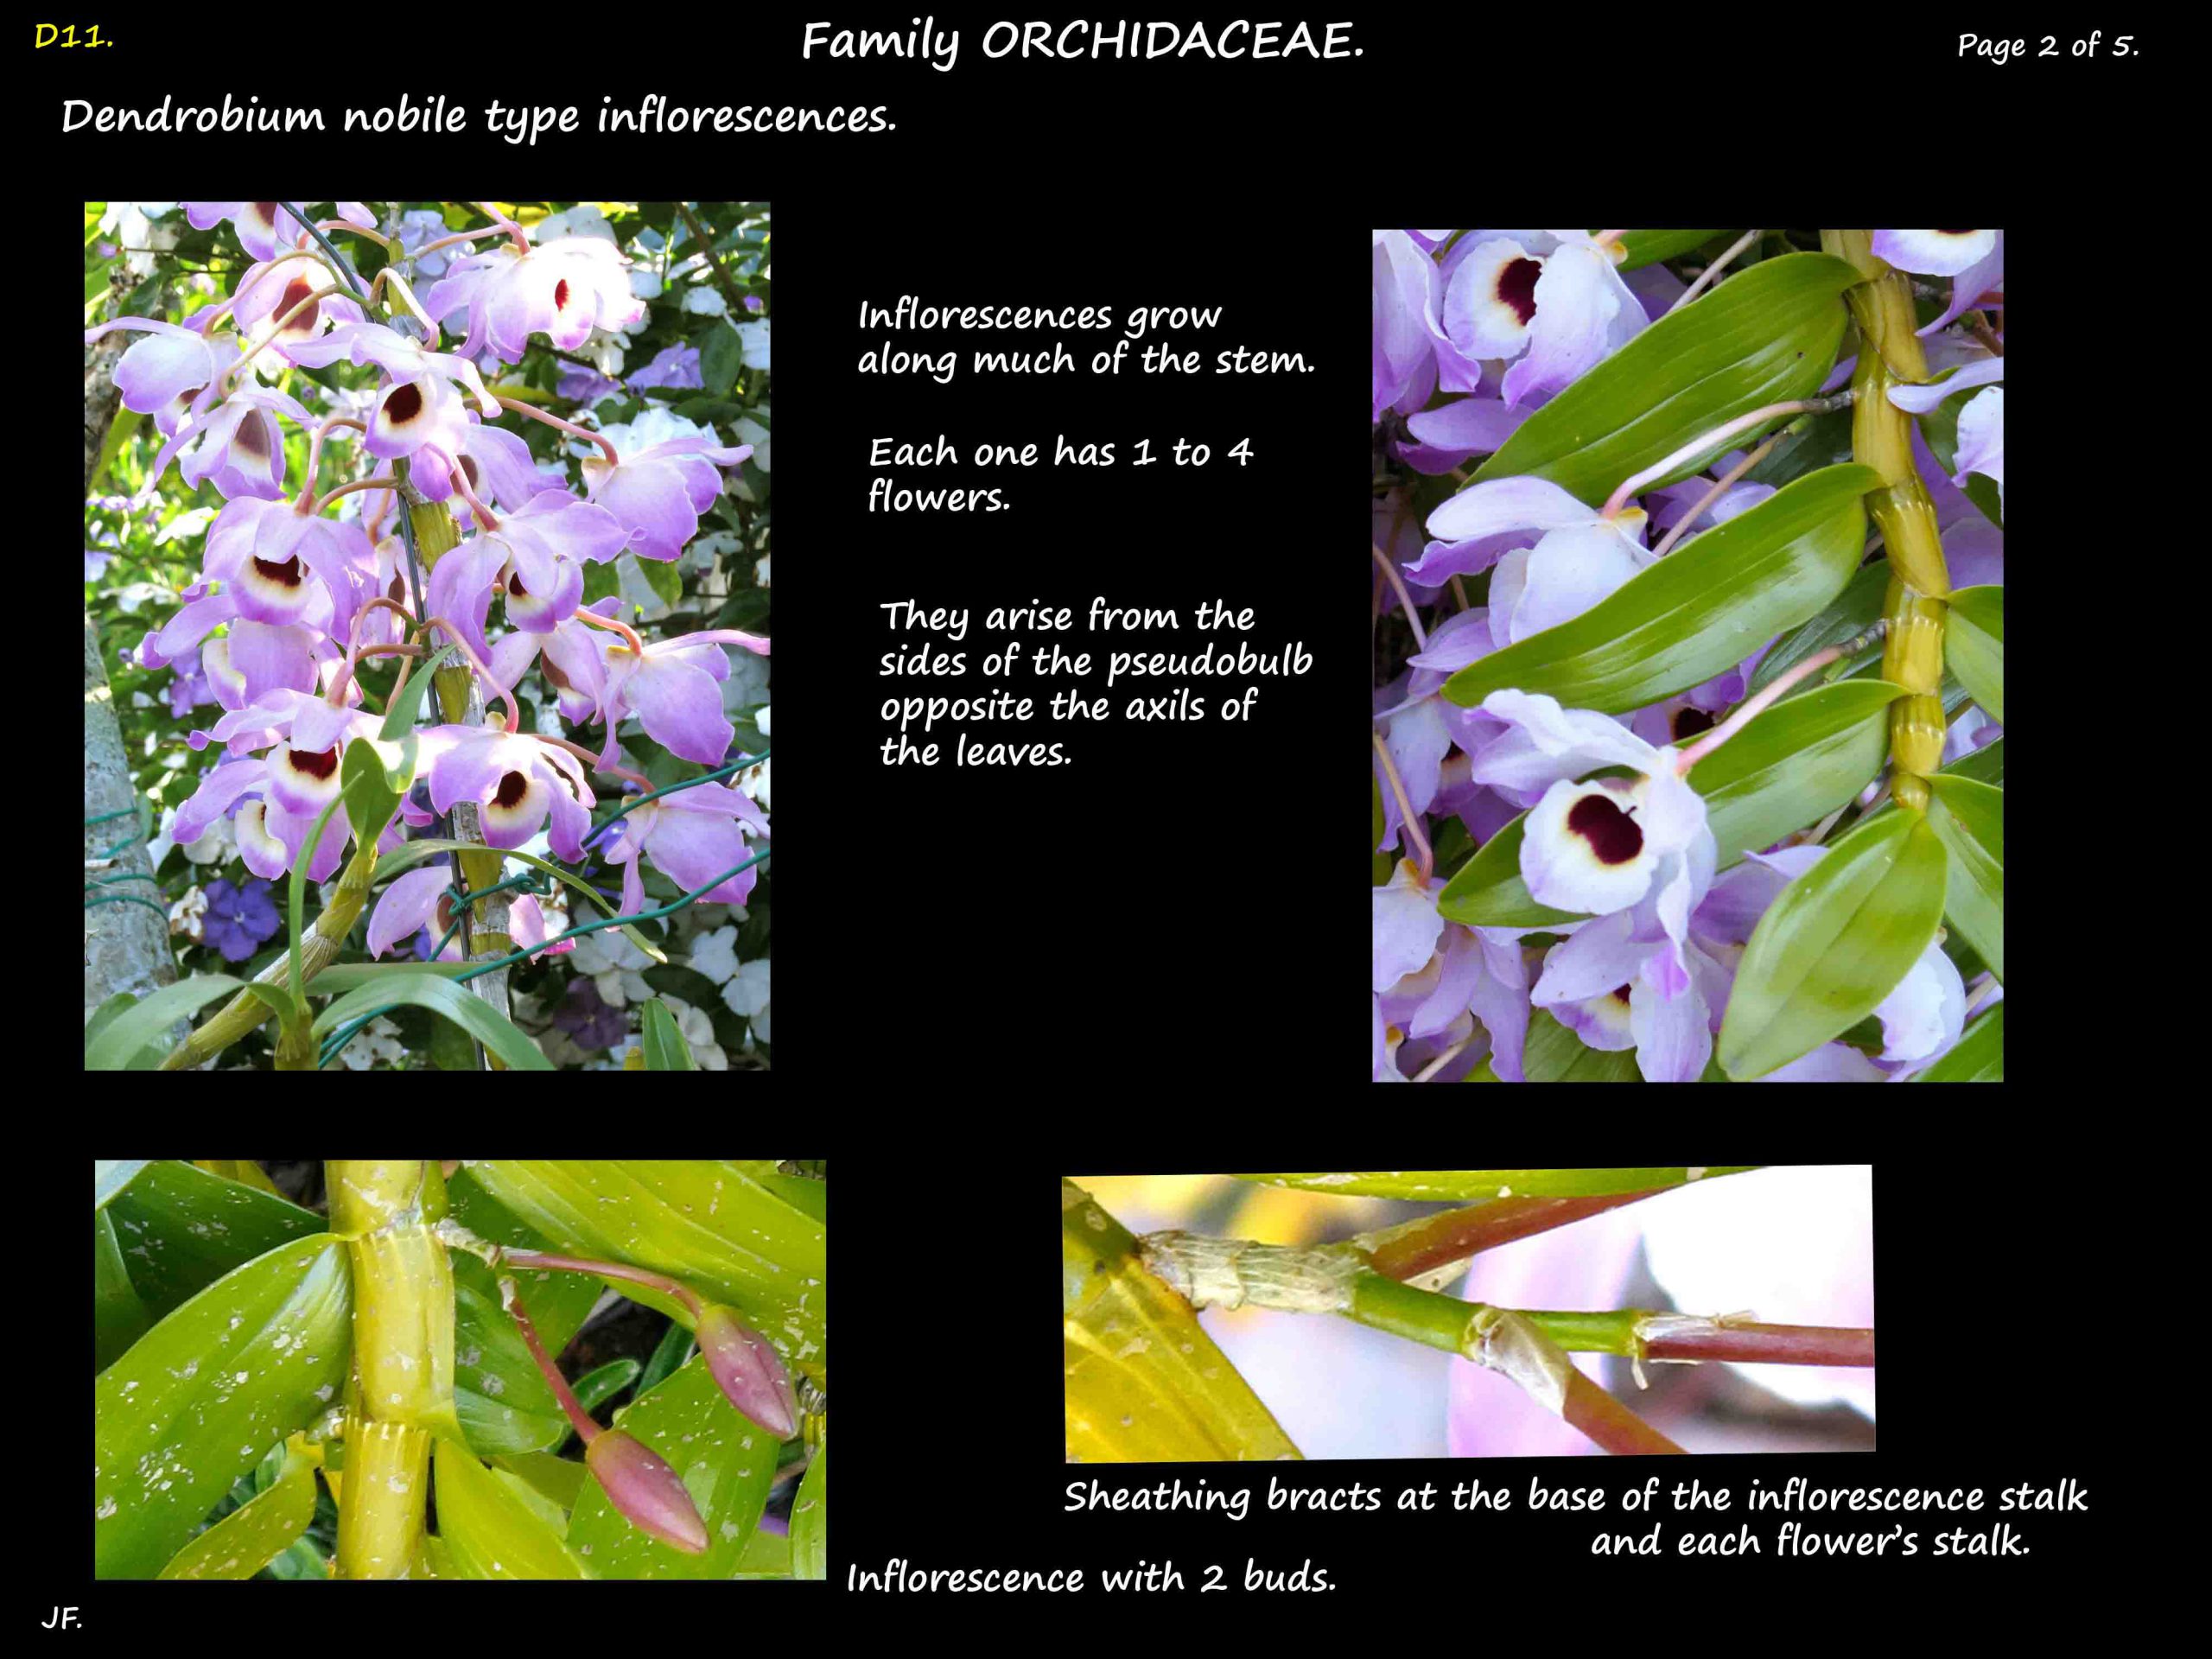 2 Dendrobium nobile inflorescence